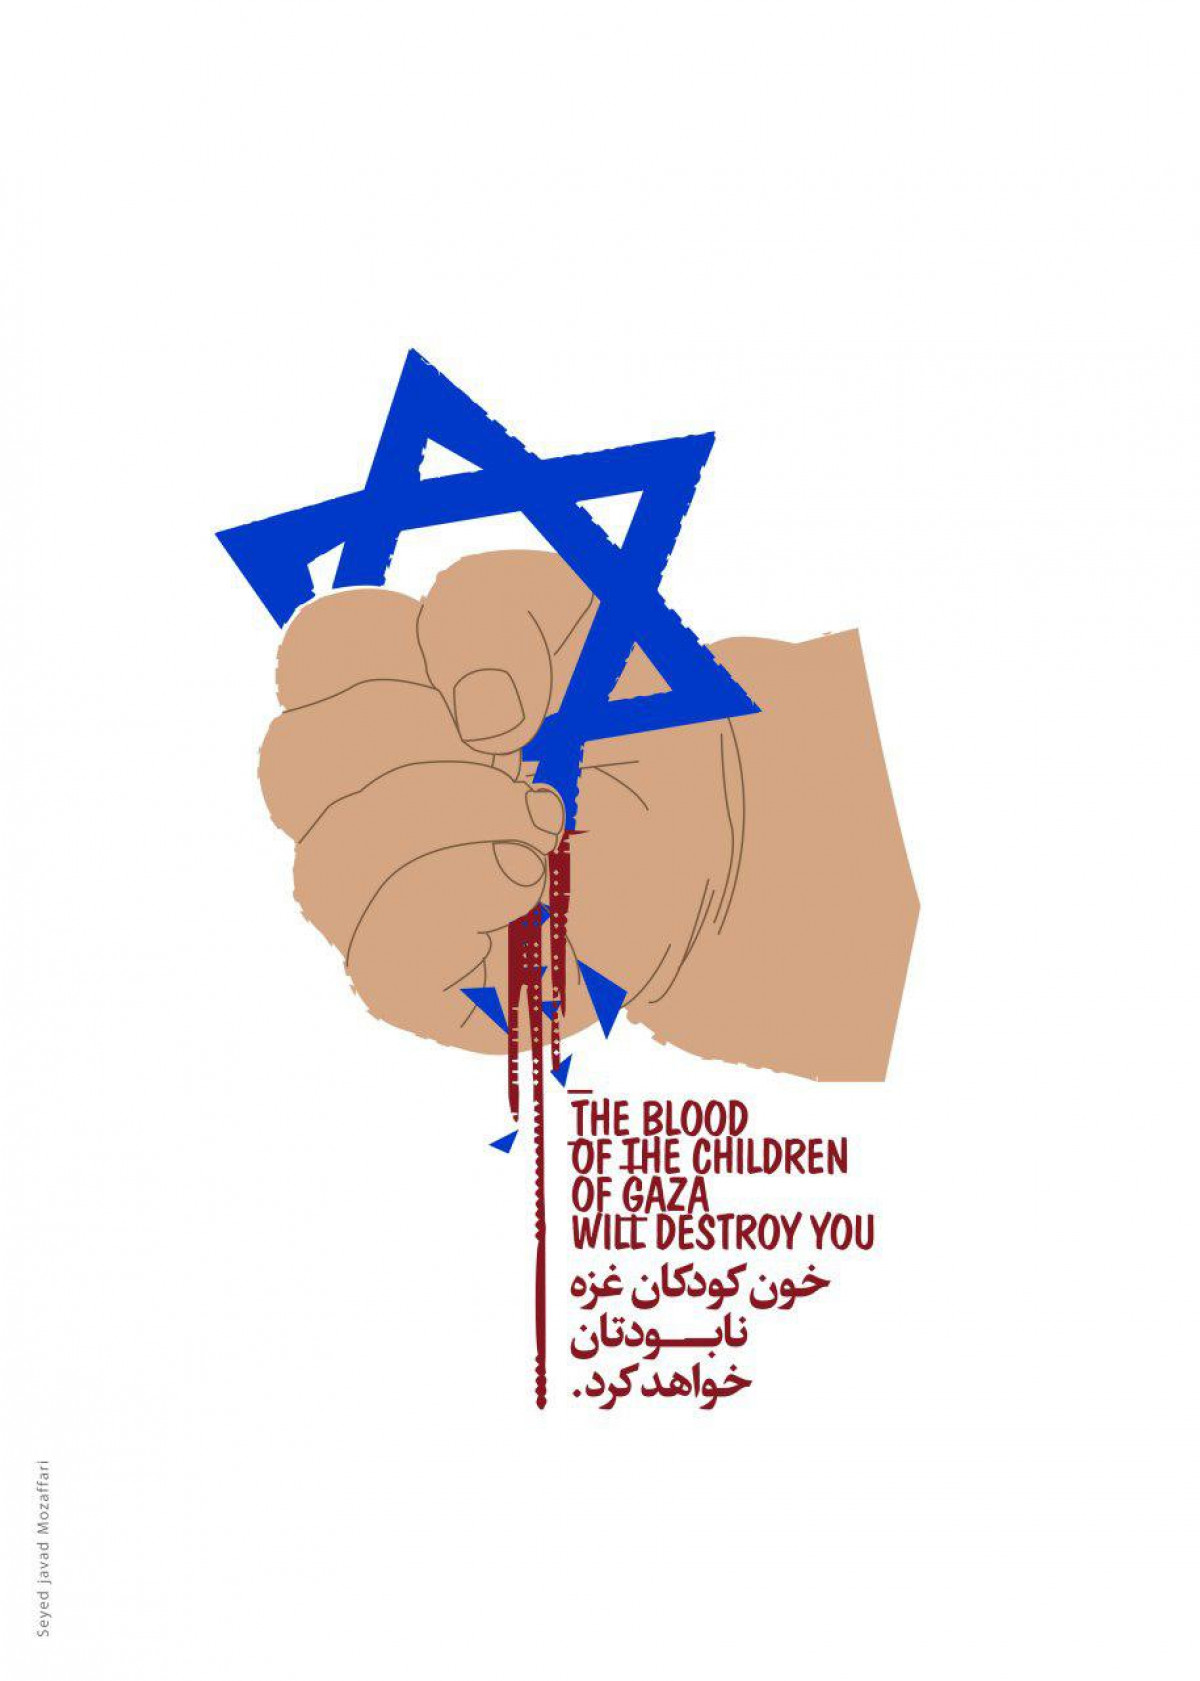 خون کودکان غزه نابودتان خواهد کرد